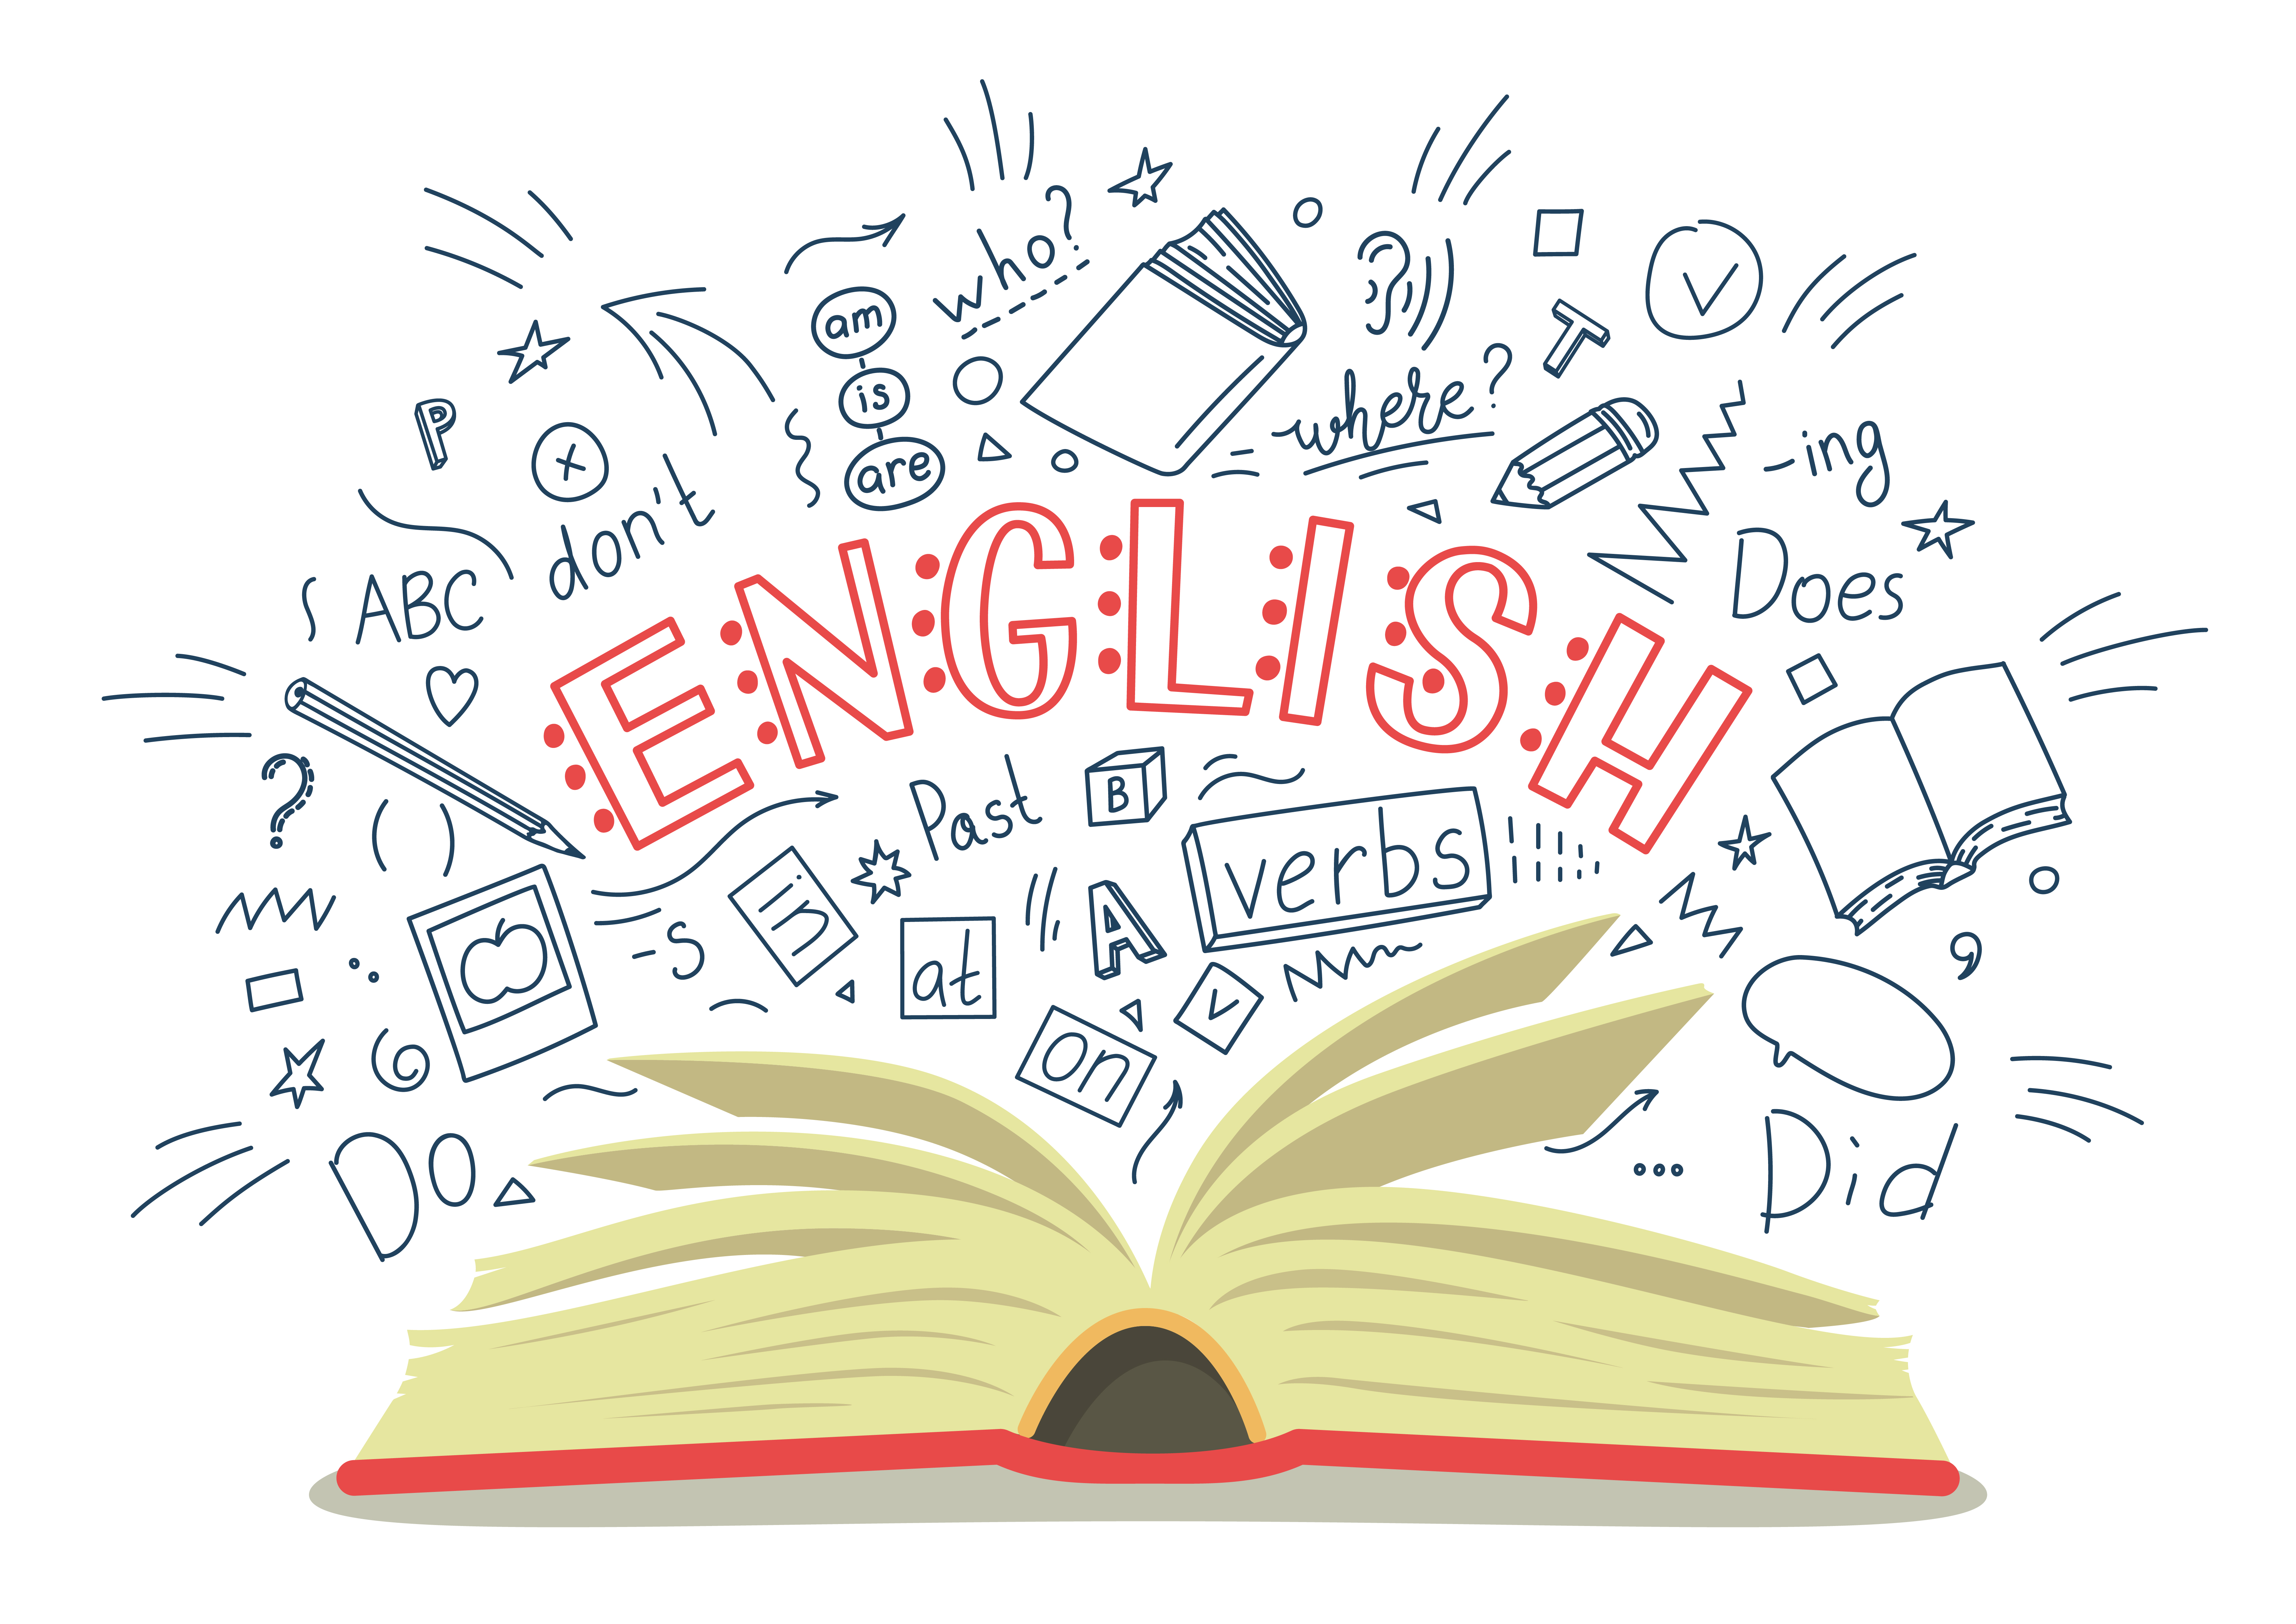 לימוד-אנגלית-חשוב-להתרכז-בבניית-יסודות-חזקים-בקריאה-ובכתיבה-באמצעות-שיעורים-מרתקים-ושיטתיים-1